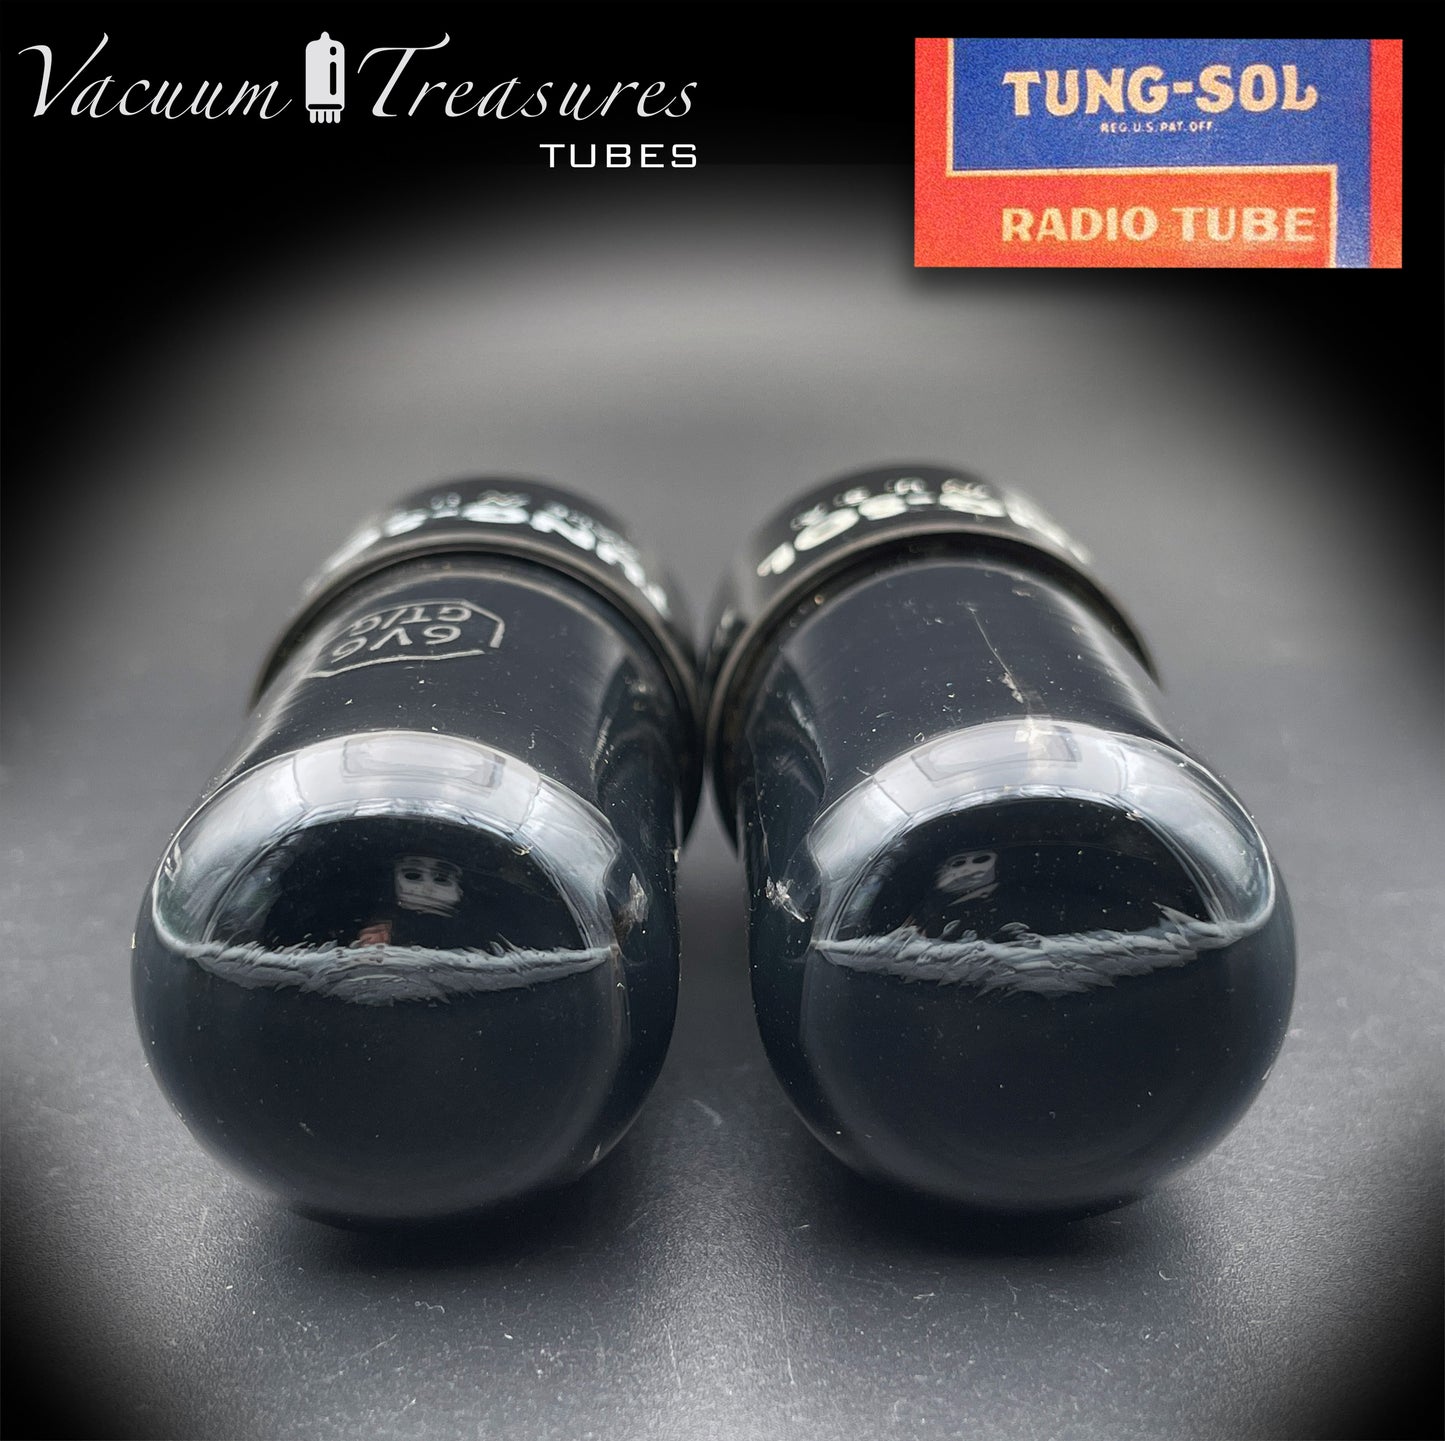 6V6 GT TUNG-SOL schwarzes Glasfolien-Getter-getestetes Paar Röhren, hergestellt in den USA '56